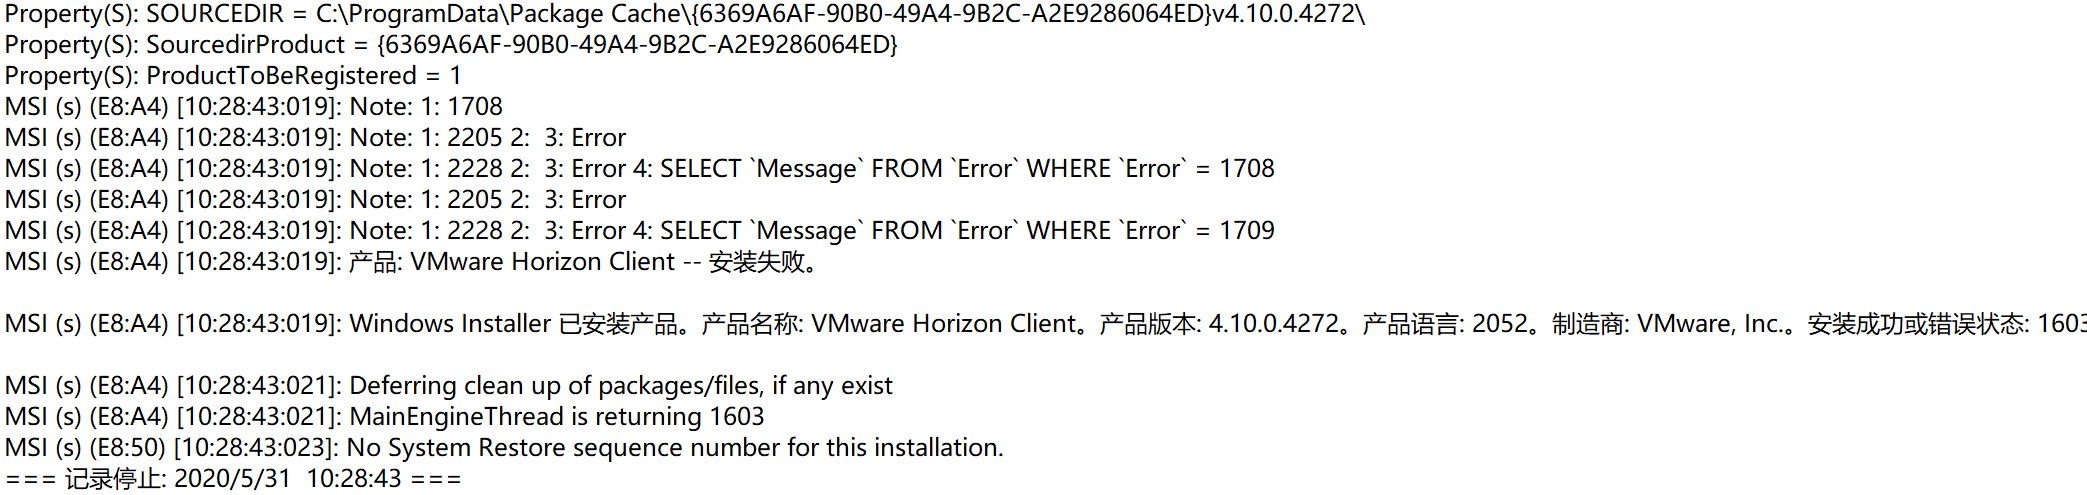 vmware horizon client error 1904